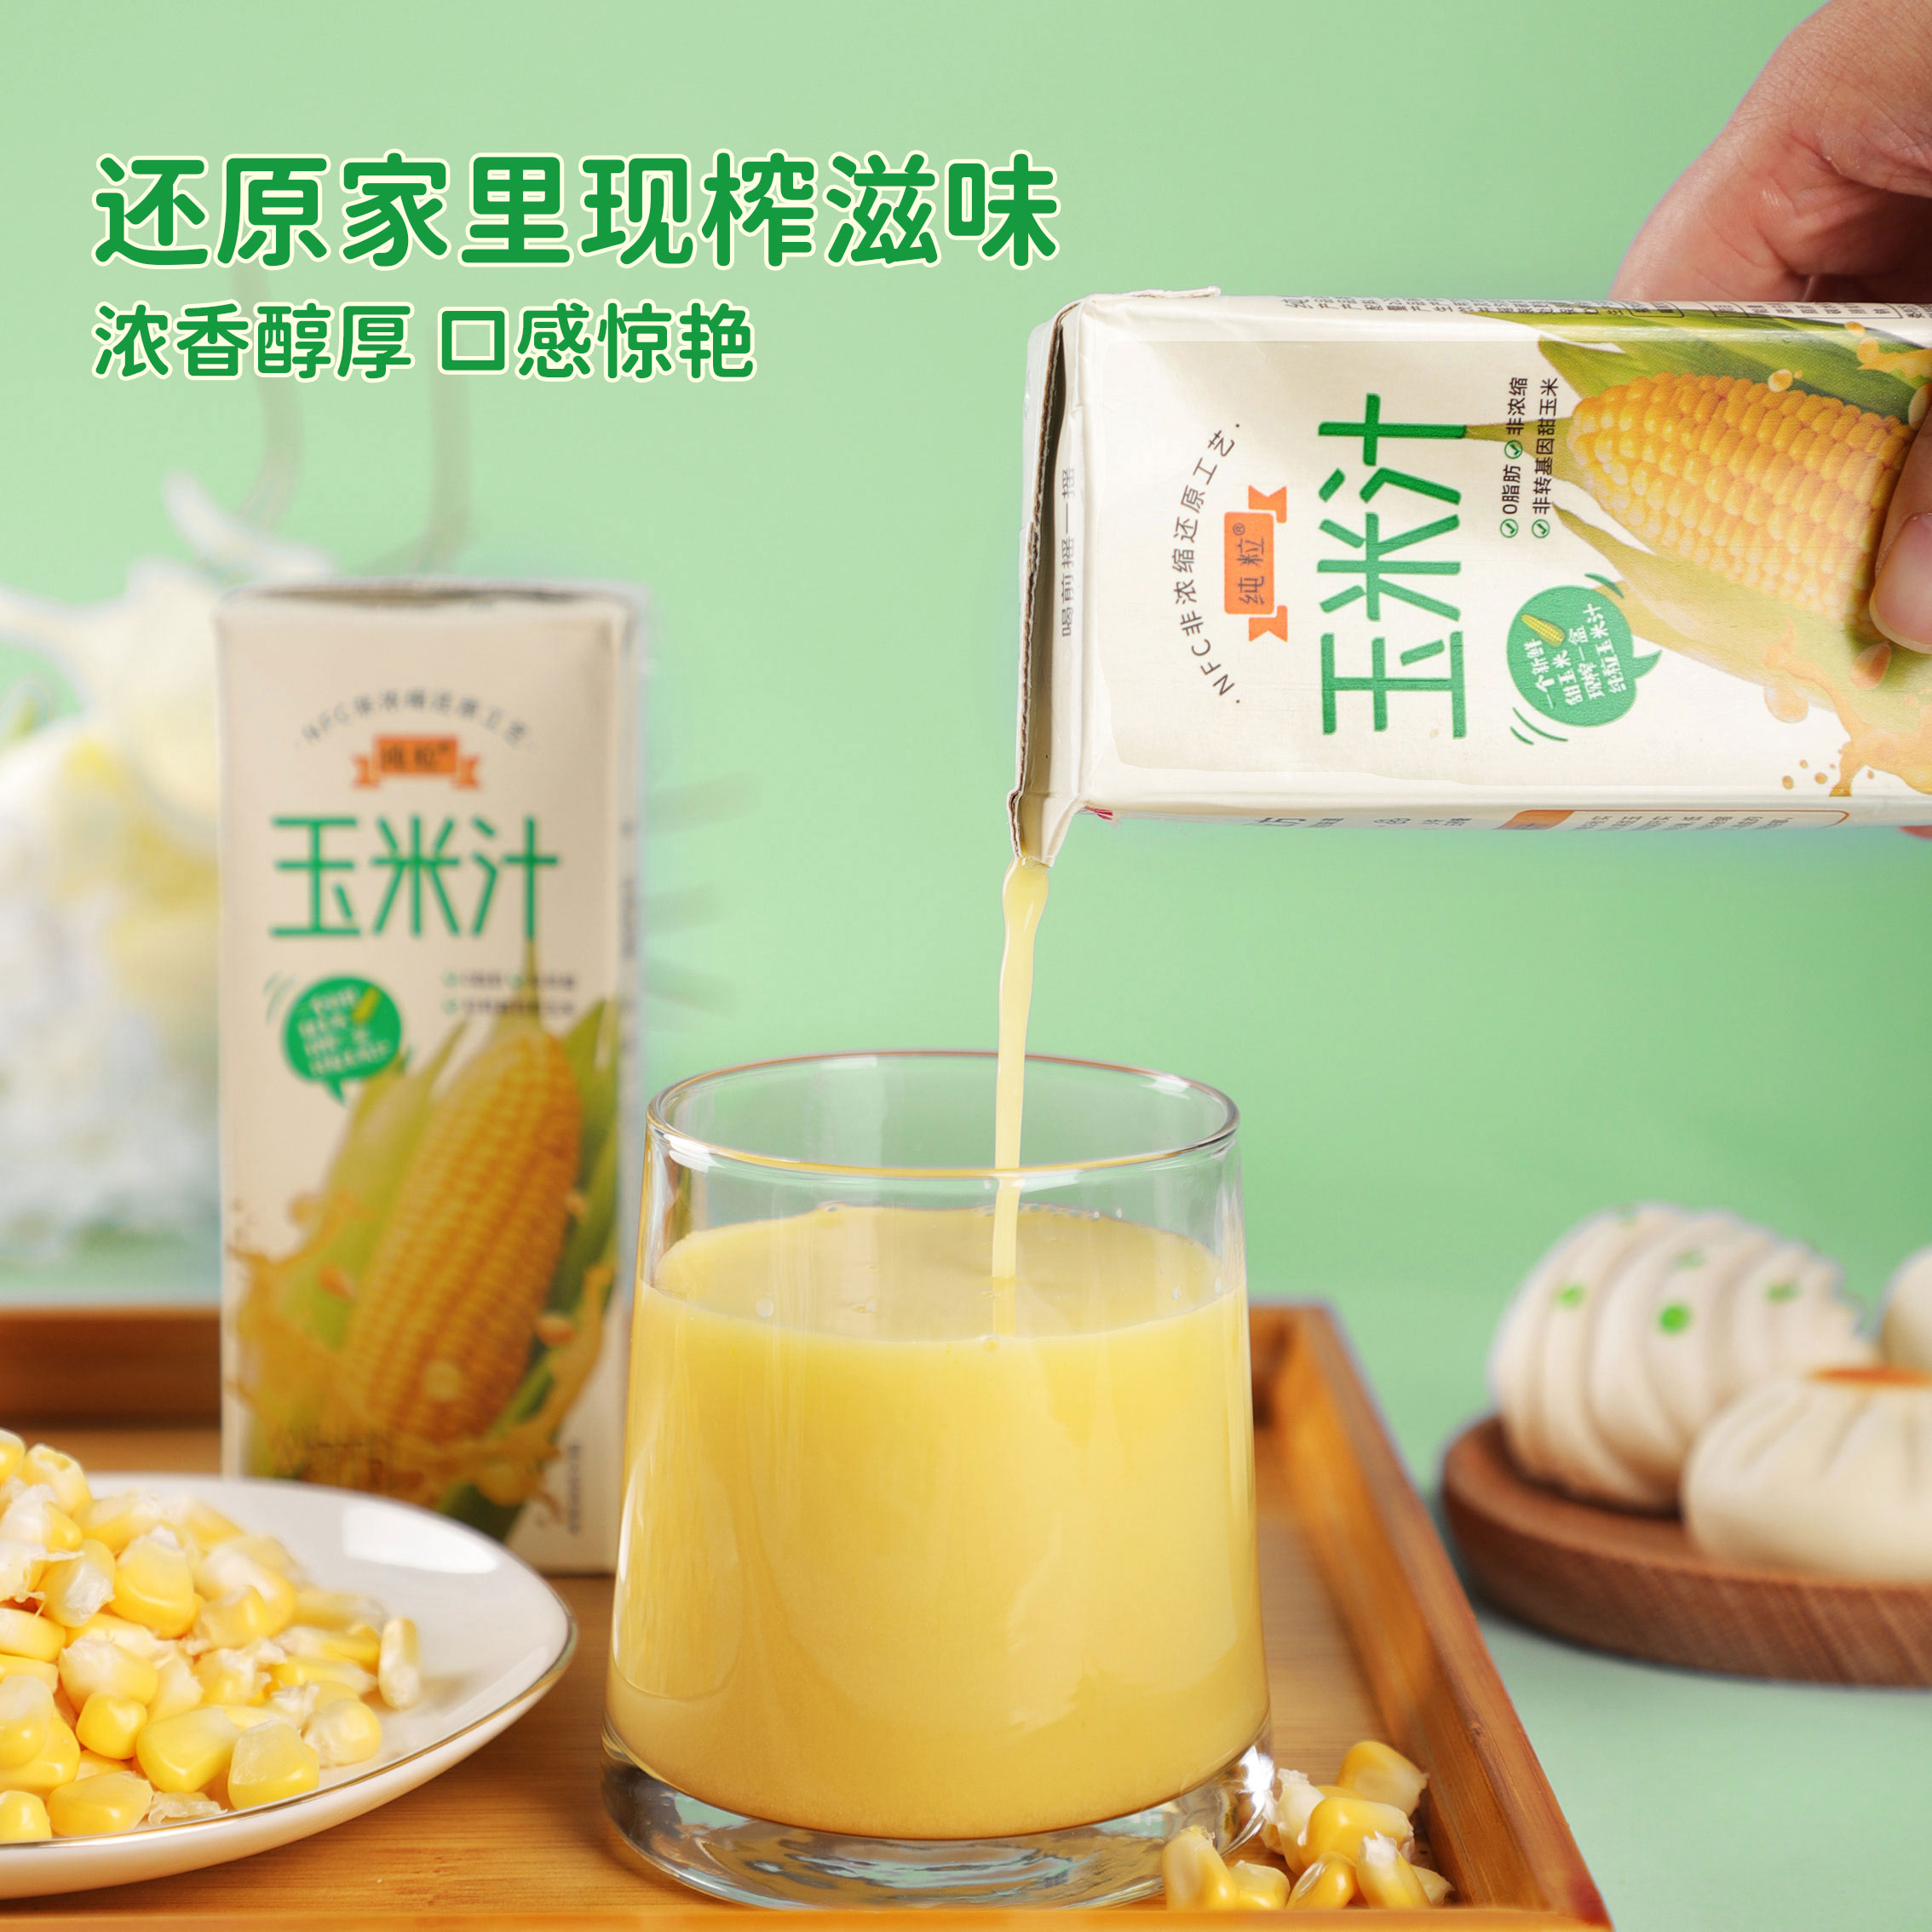 纯粒鲜榨甄选玉米汁原汁原味新鲜无添加果蔬果汁NFC工艺250g*10 - 图0